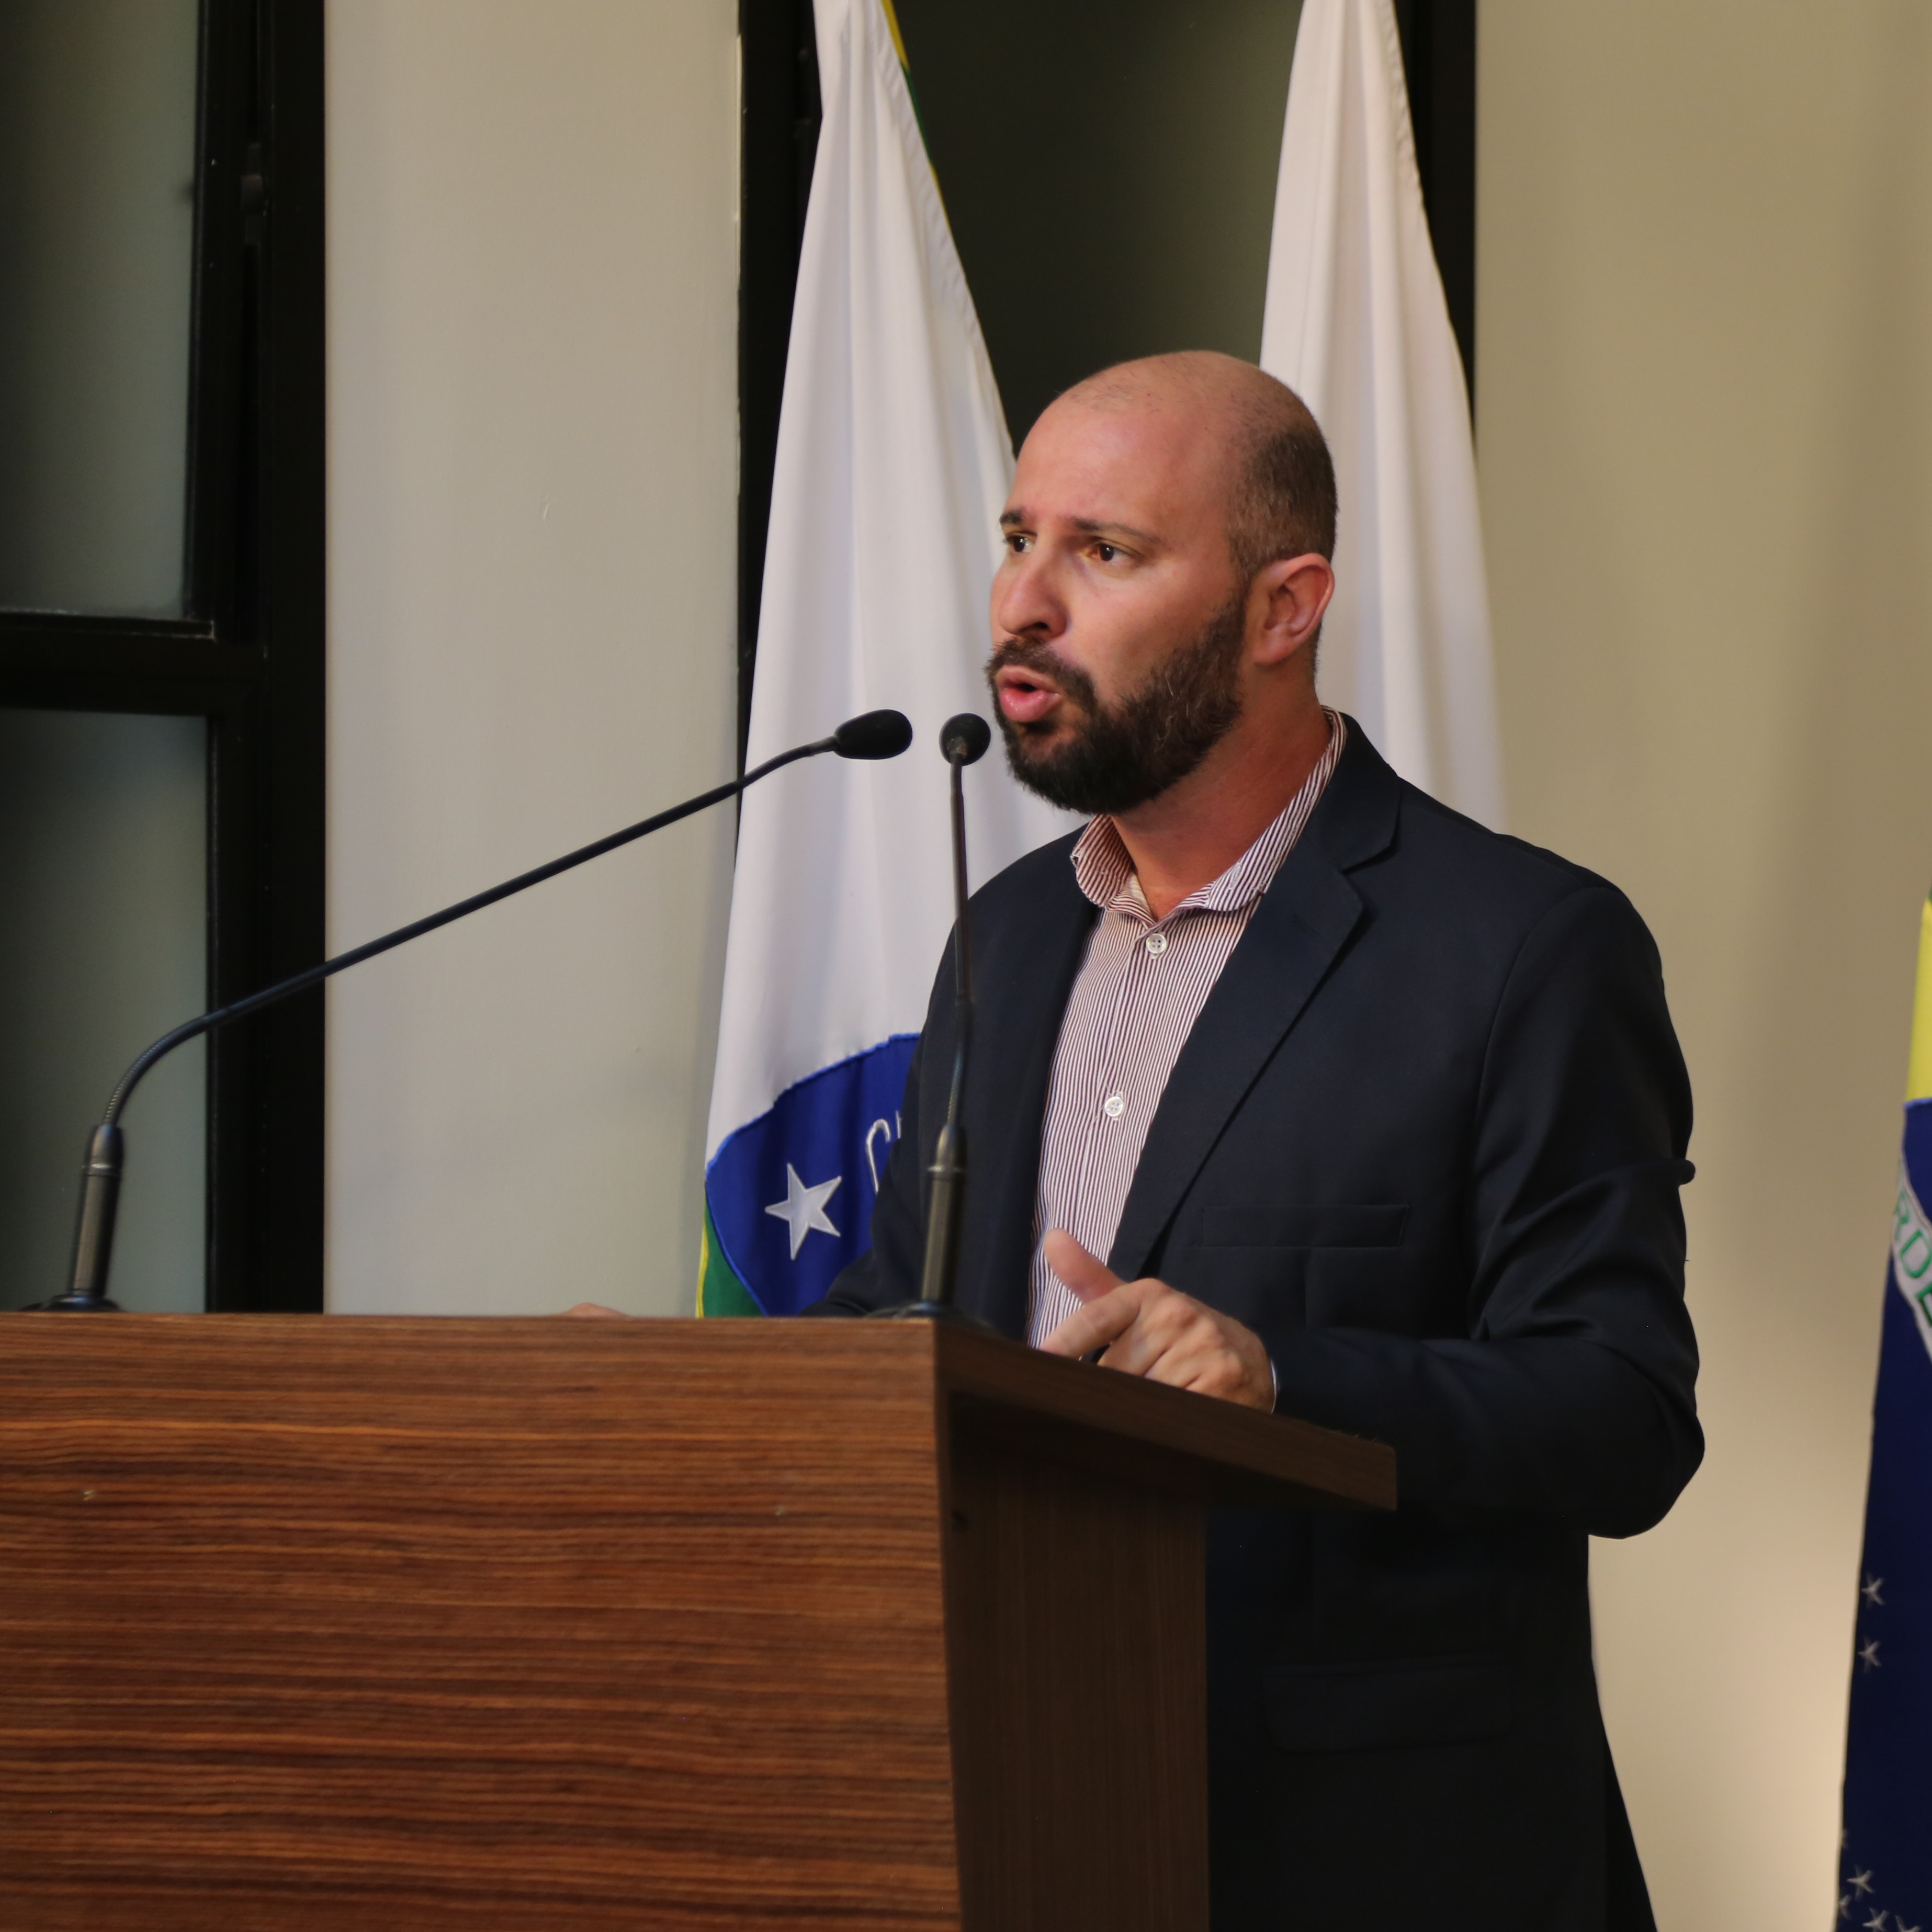 Vereador Cristiano Gonçalves (Moto Link) (Solidariedade), Presidente da Comissão de Trânsito e Mobilidade Urbana